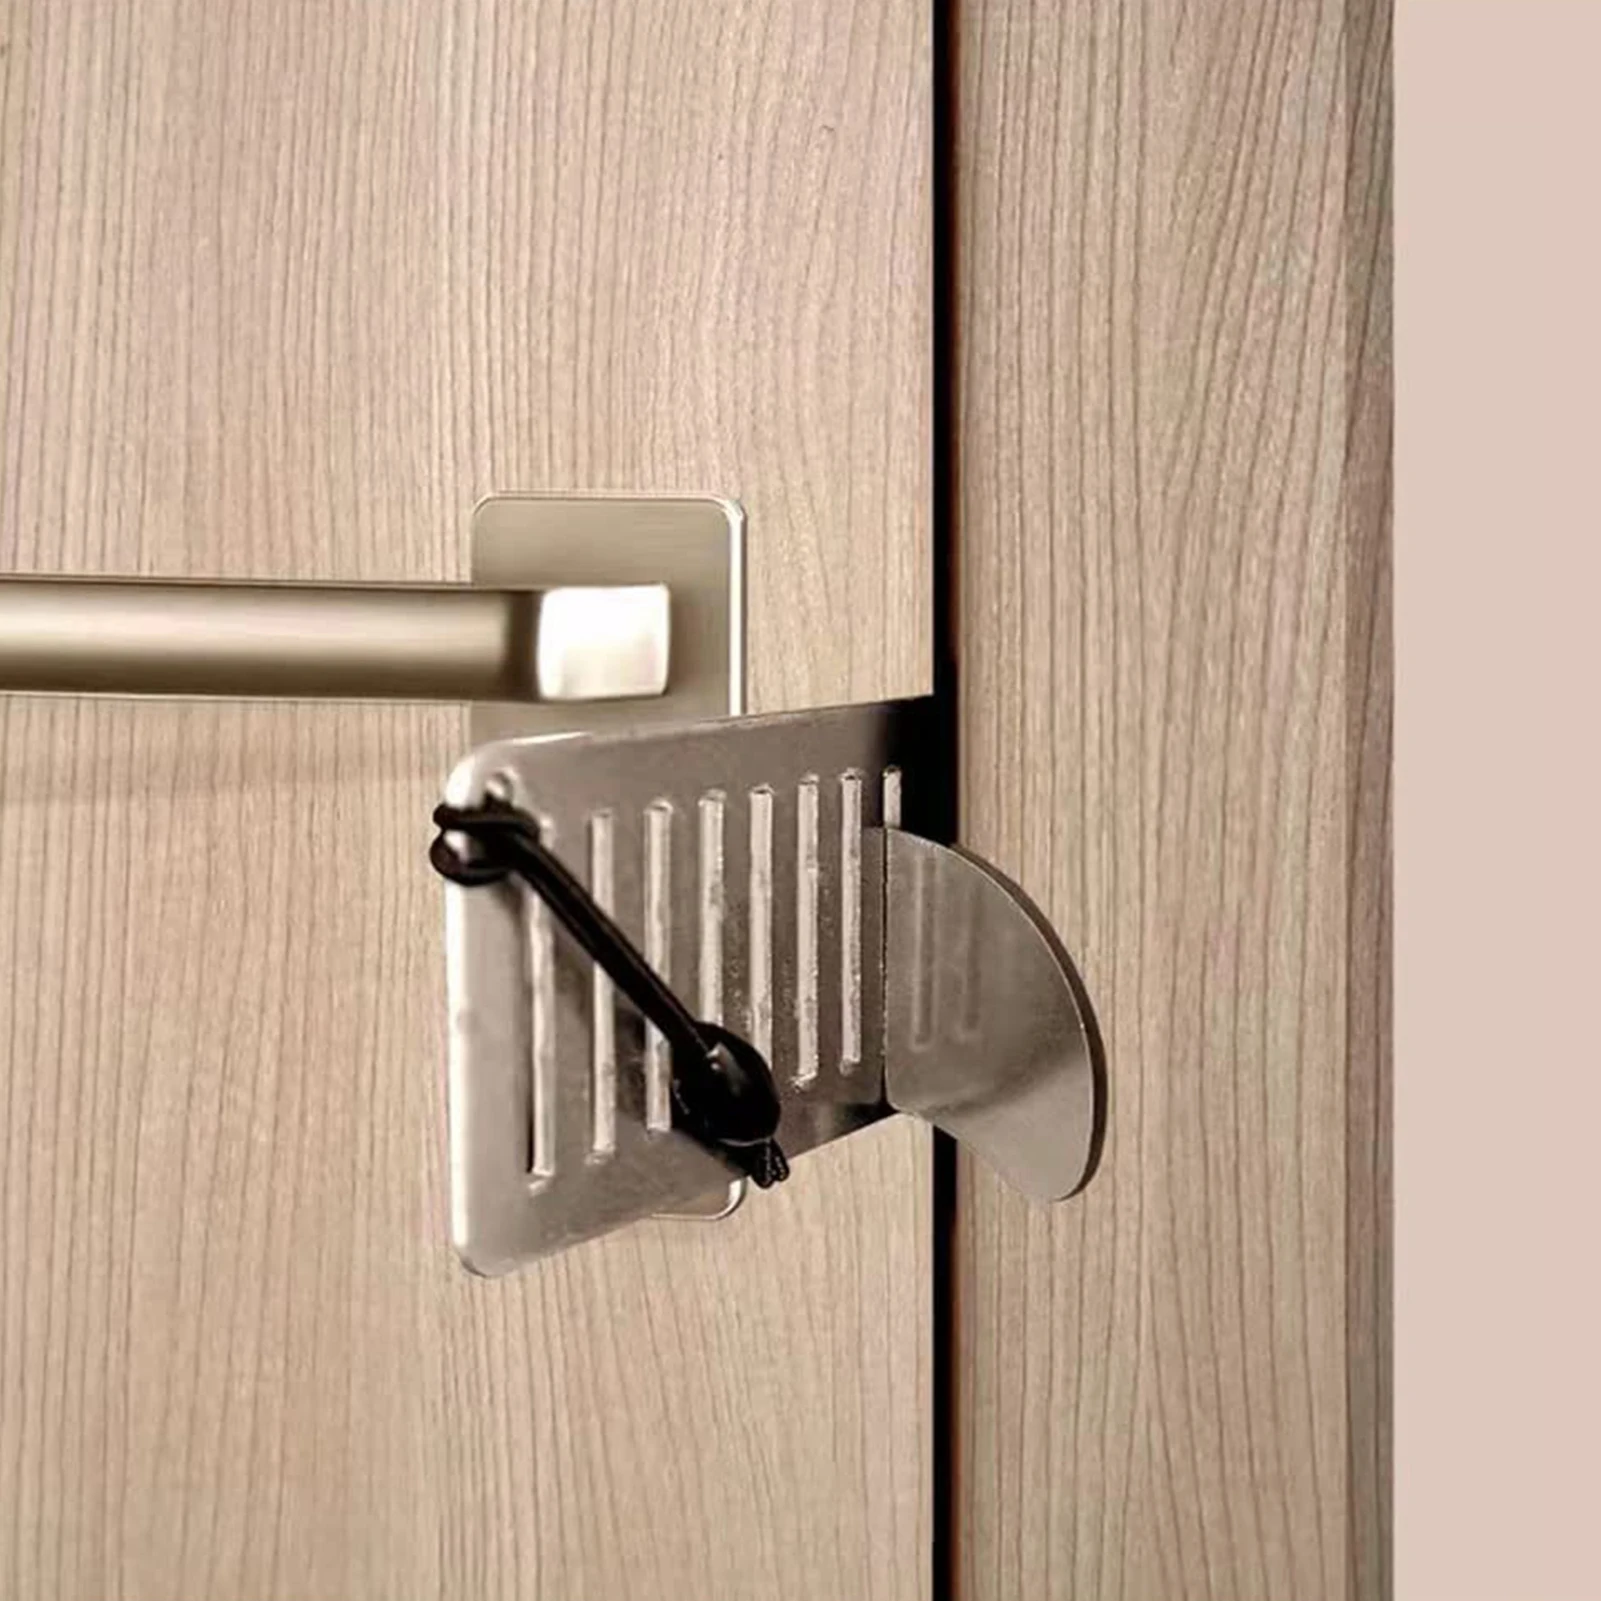 DoorJammer A Portable Practical Door Lock That Lets You Lock Any Door Durable 